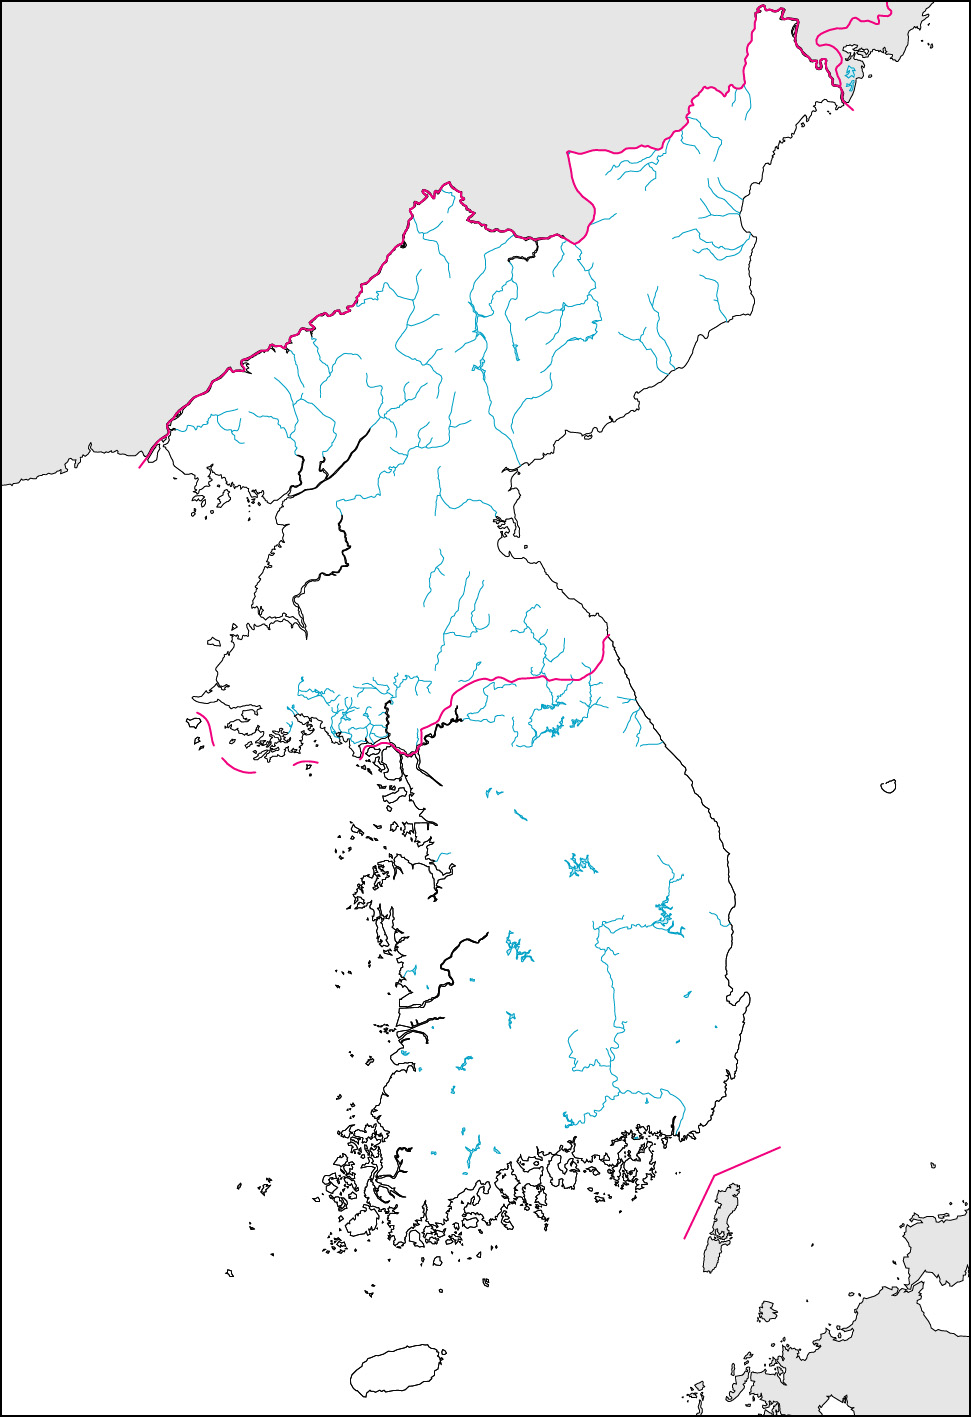 朝鮮半島白地図(国境記載)の画像